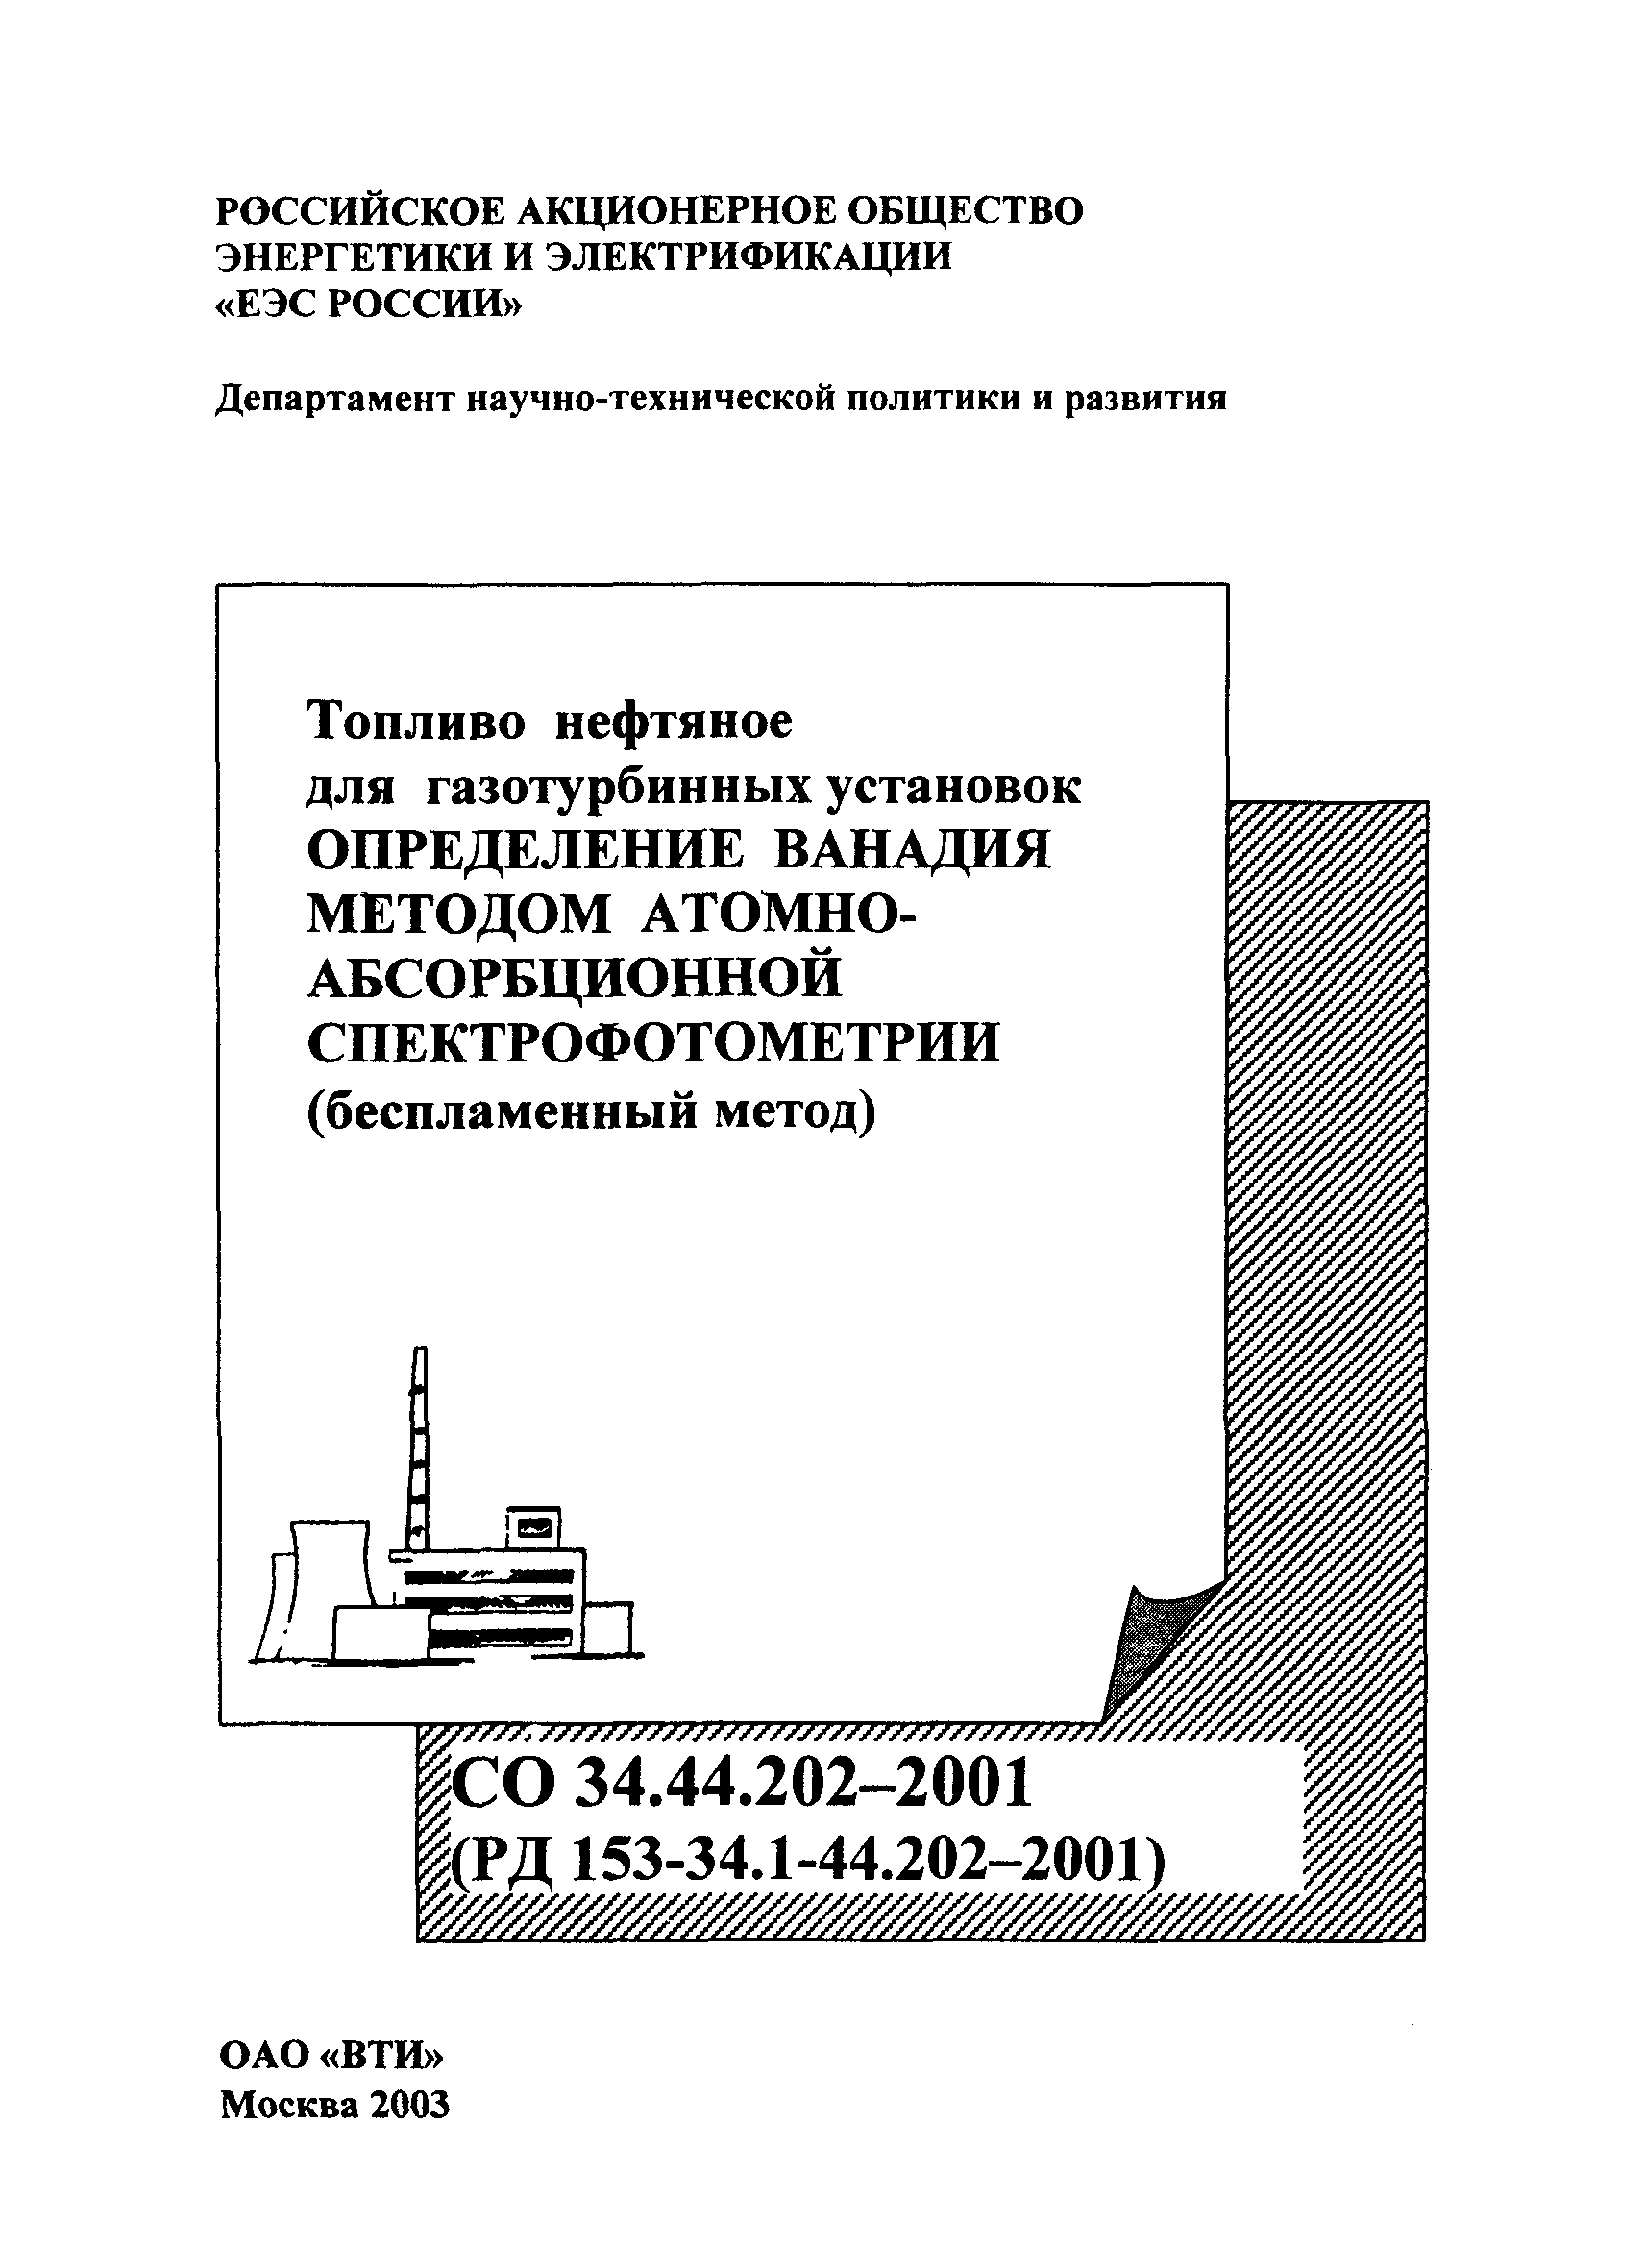 РД 153-34.1-44.202-2001